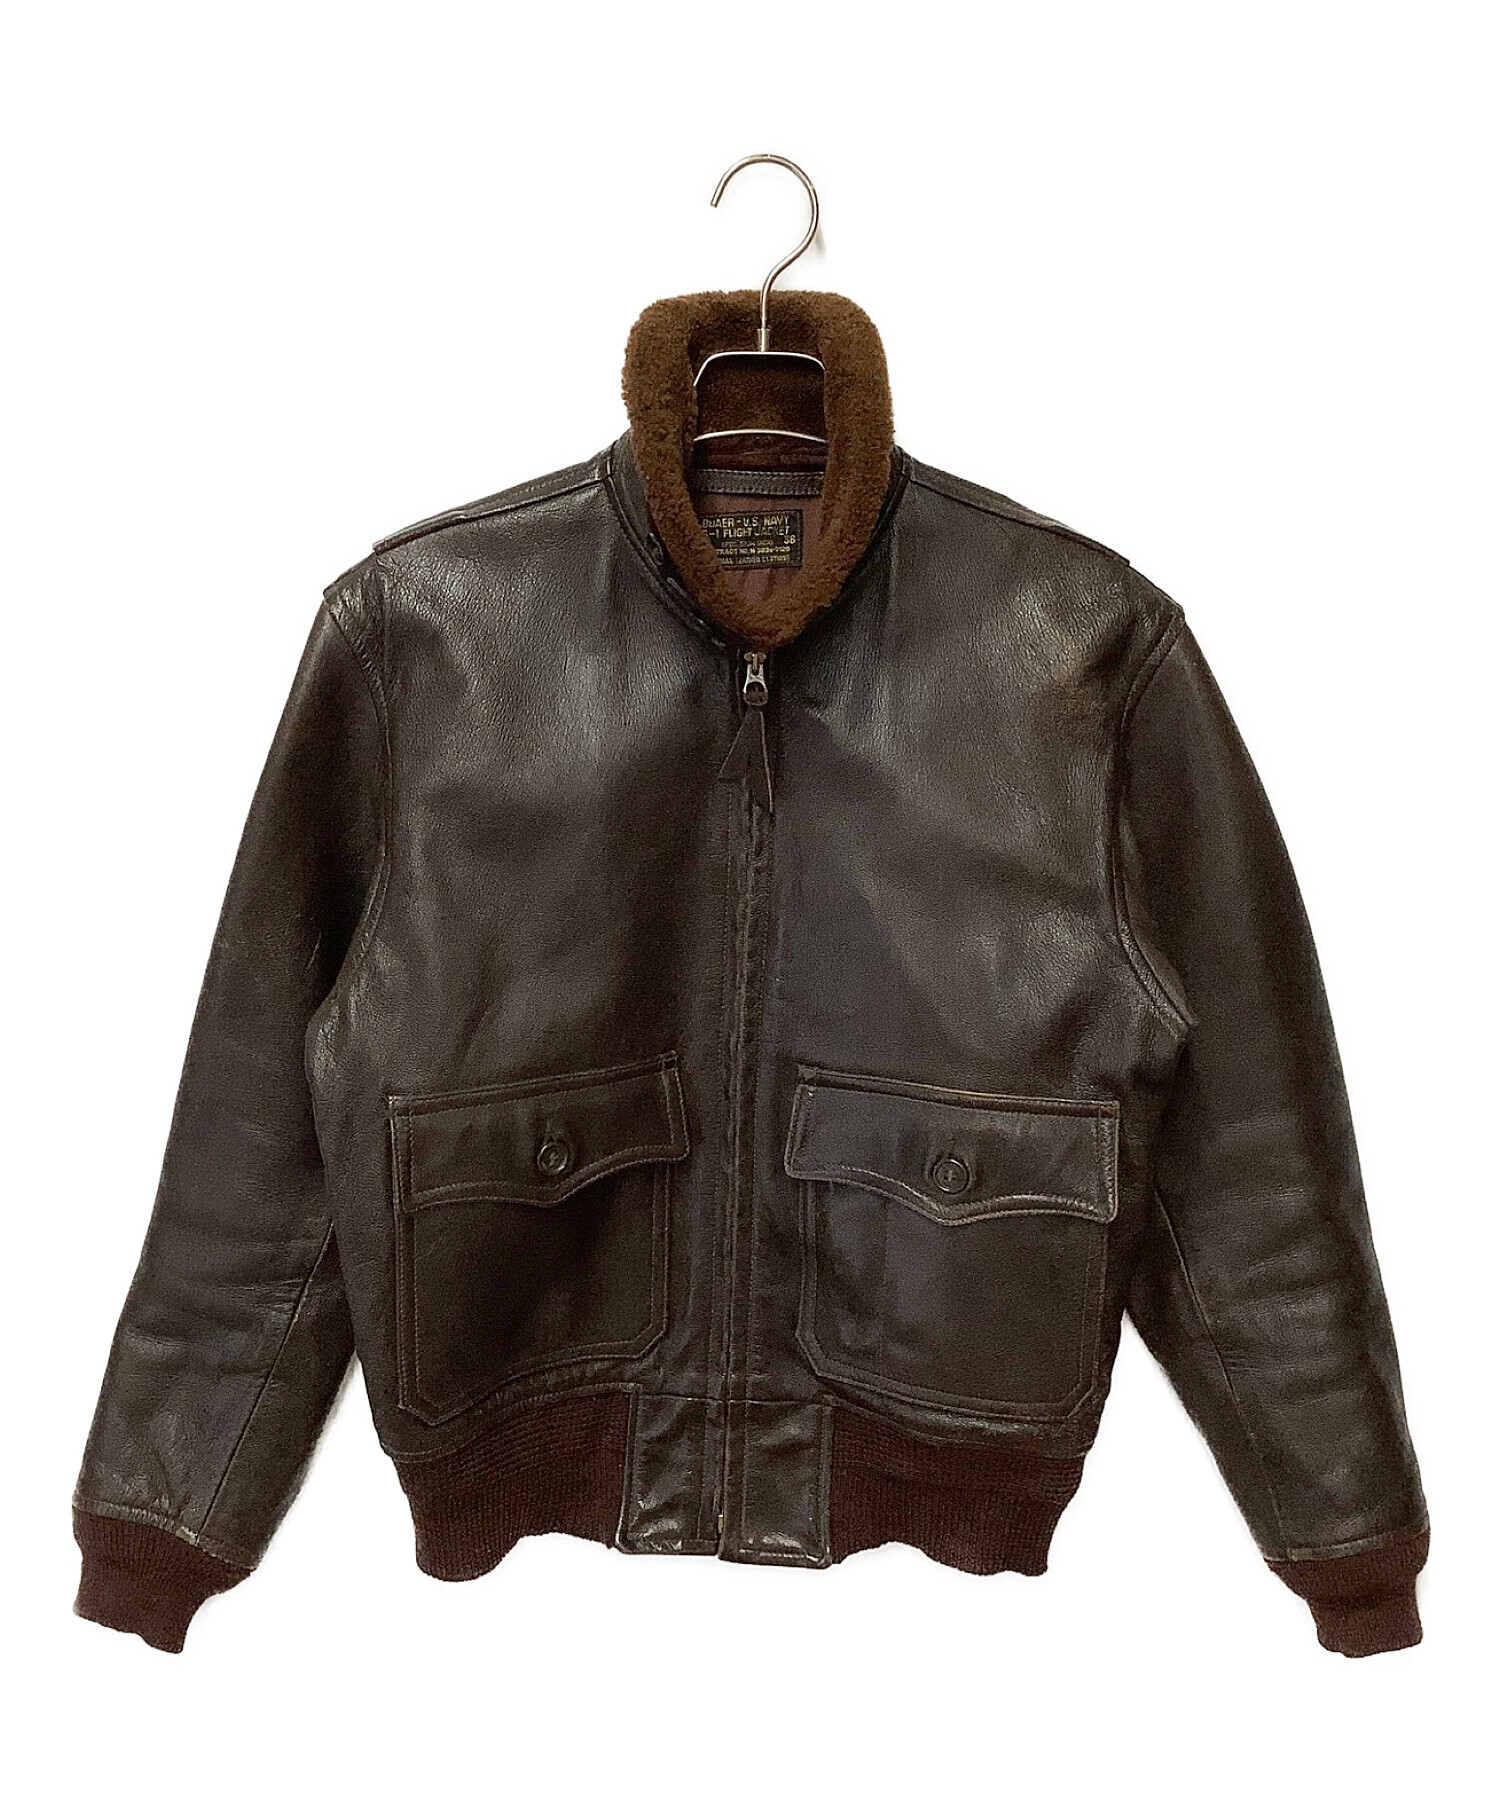 Eastman Leather Clothing (イーストマン レザー クロージング) G-1フライトジャケット ブラウン サイズ:36